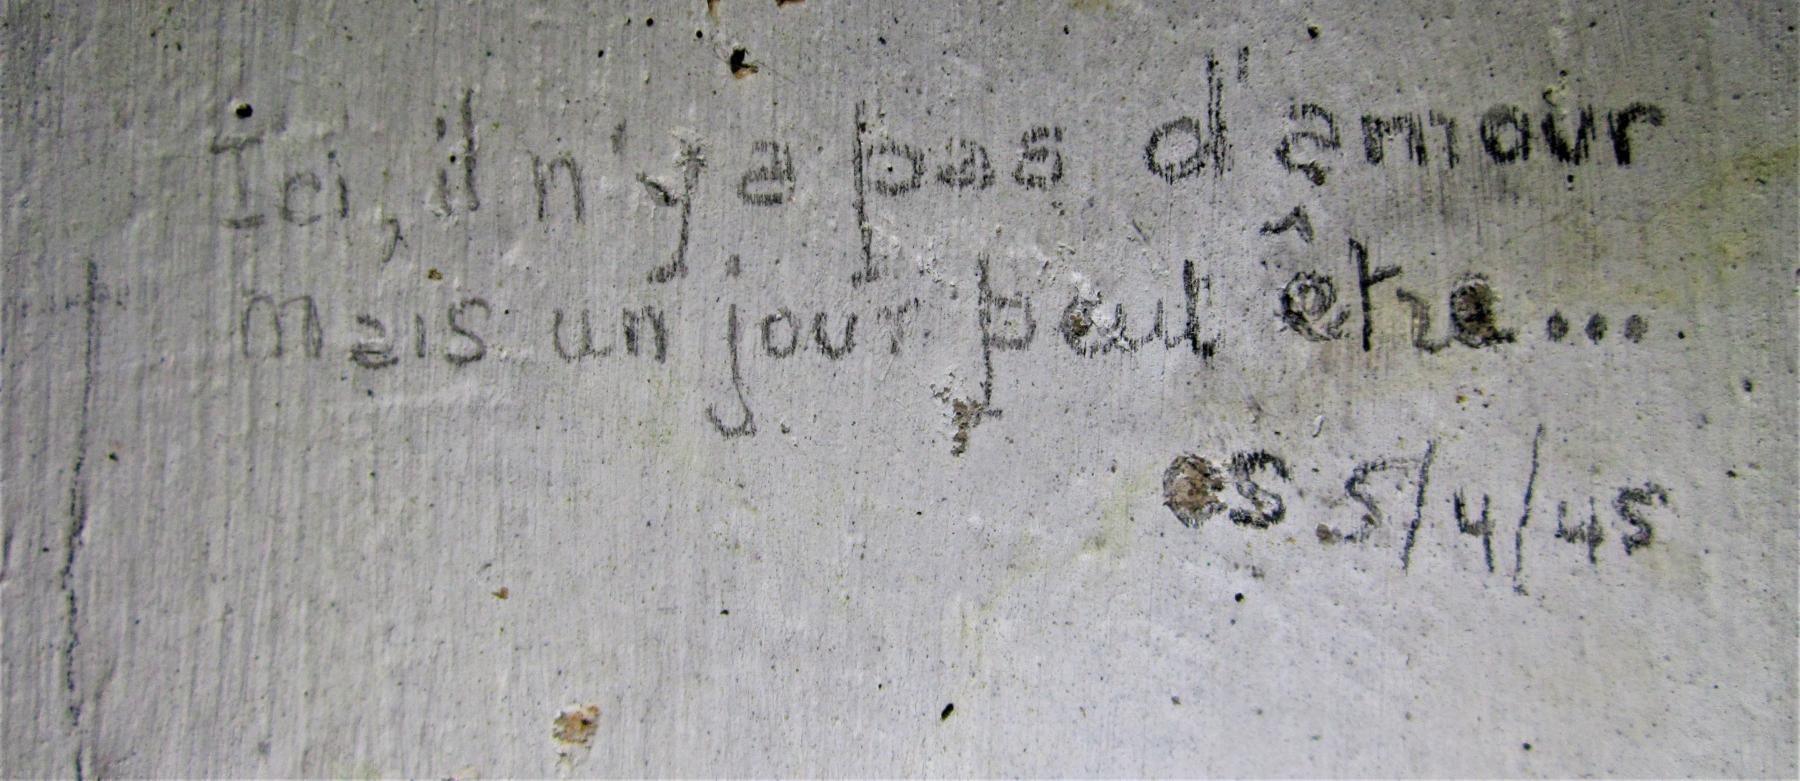 Ligne Maginot - BATTERIE DES PAYSANS - (Cuve pour canon) - Graffiti daté du 05/04/1945